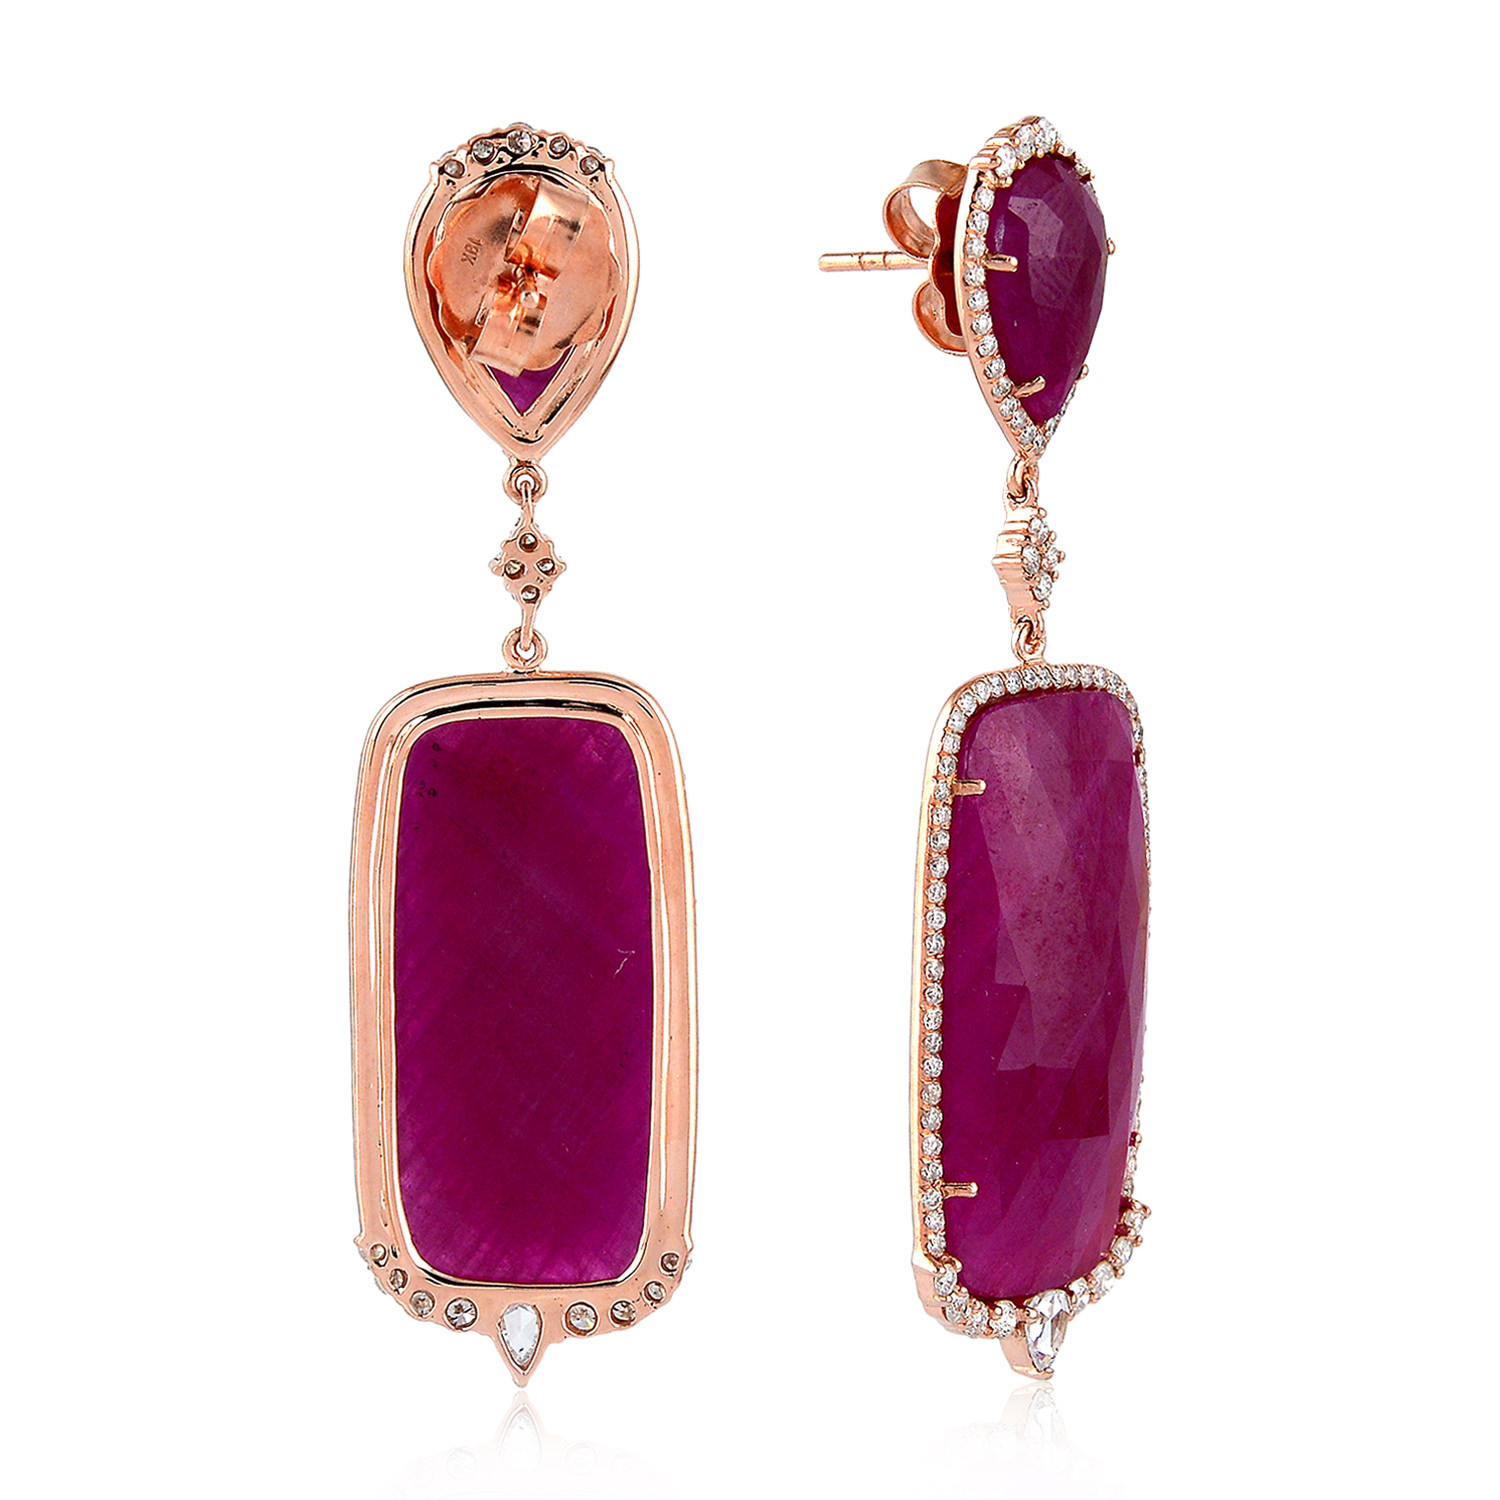 Ct Pave Diamond Ruby Drop Dangle Earrings Solid K Rose Gold Women S Jewelry Ebay